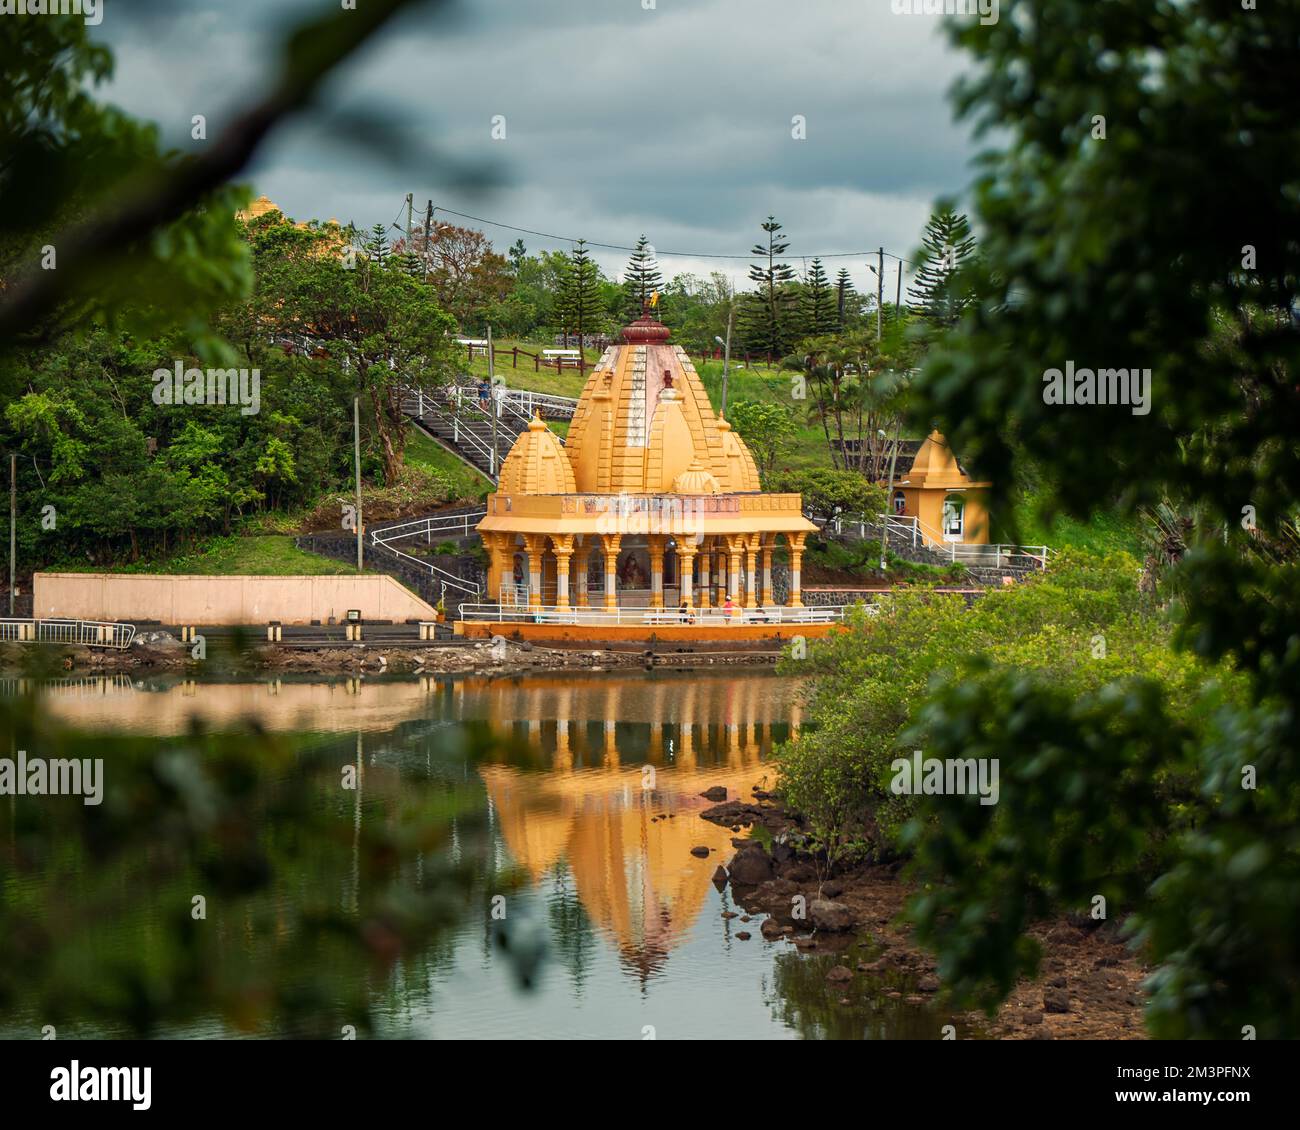 Grand bassin est un lieu de méditation, de prière et de détente. Célèbre destination touristique sur l'île Maurice. Plus de statue de dieux hidu dans ce p Banque D'Images